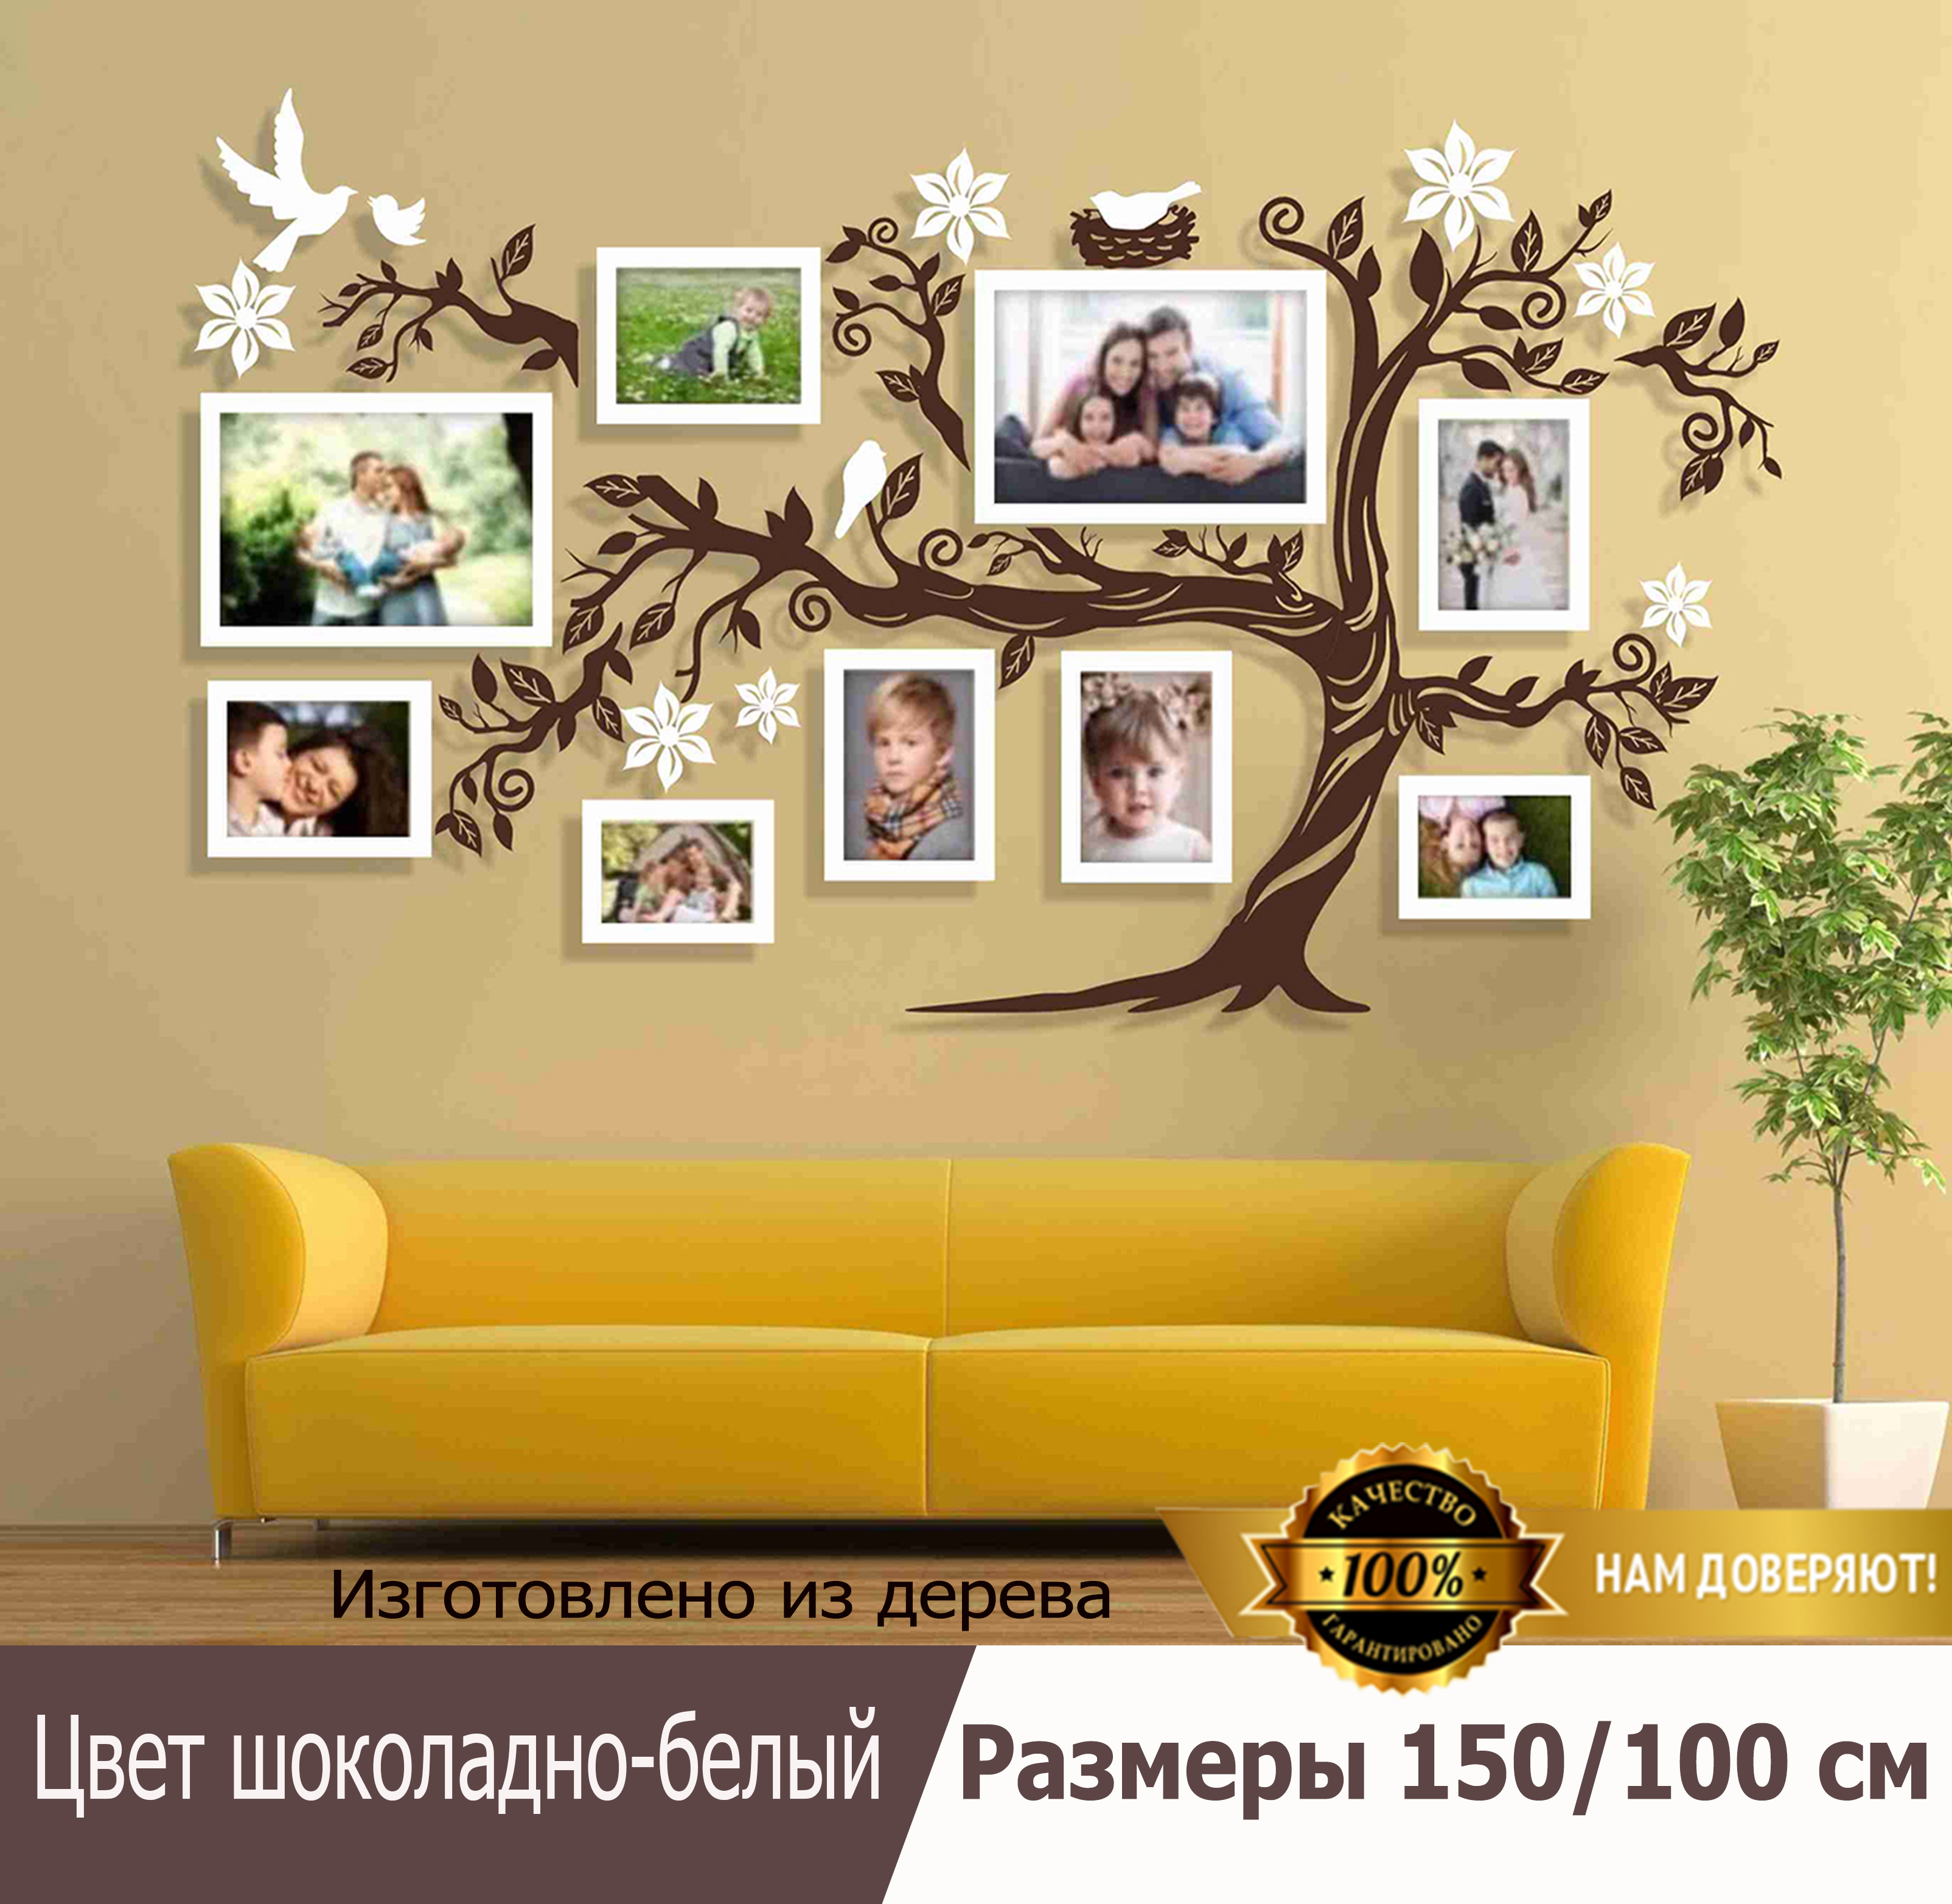 Изображения по запросу Семейное дерево